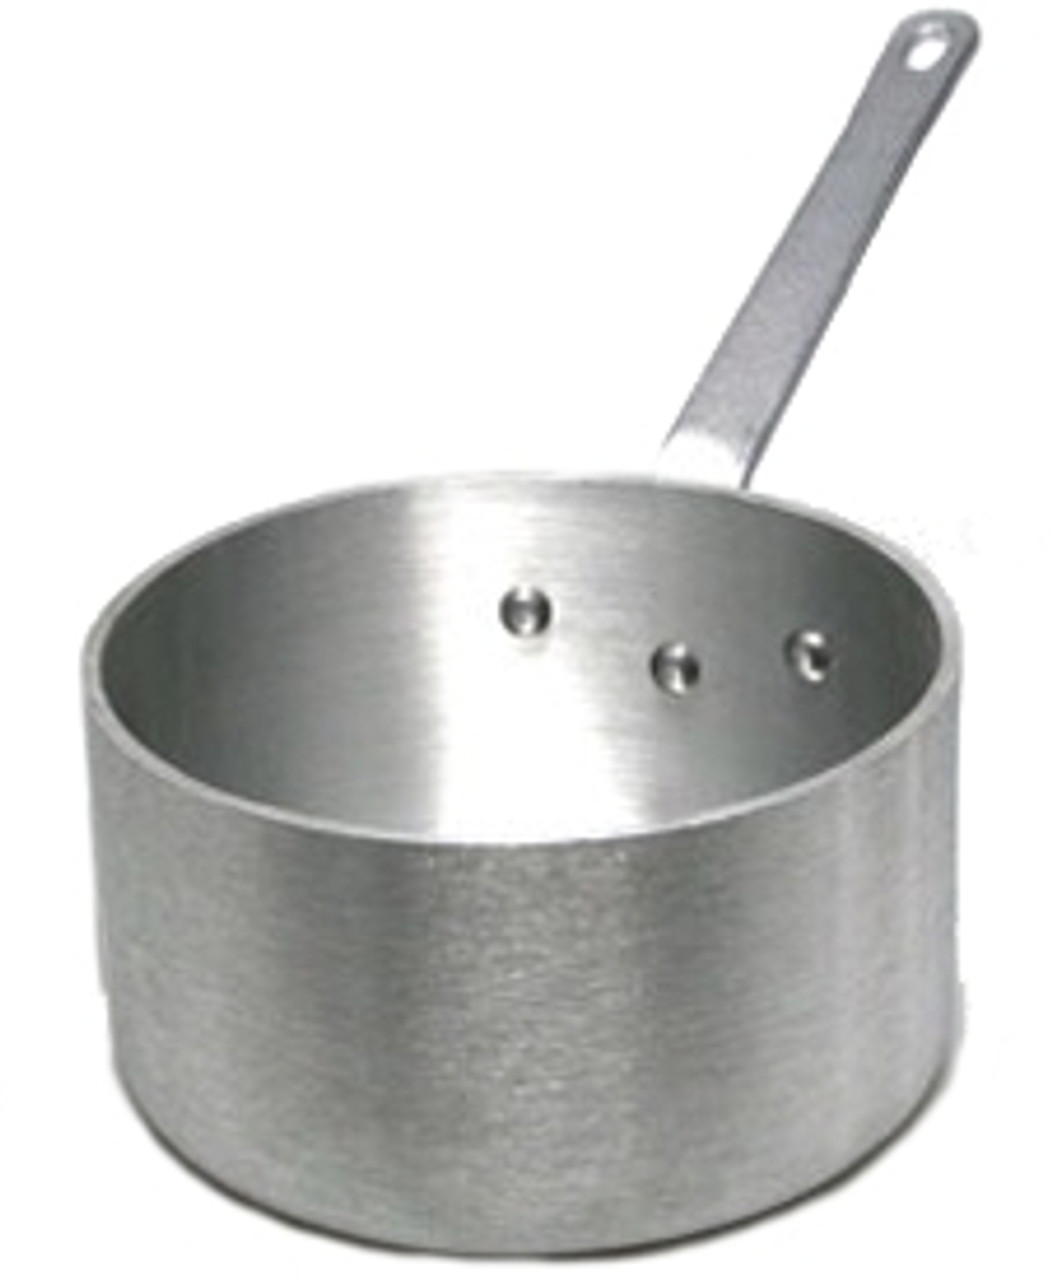 Vollrath 4108 Sauce Pot - Heavy Duty Aluminum - 4 1/2 Qt